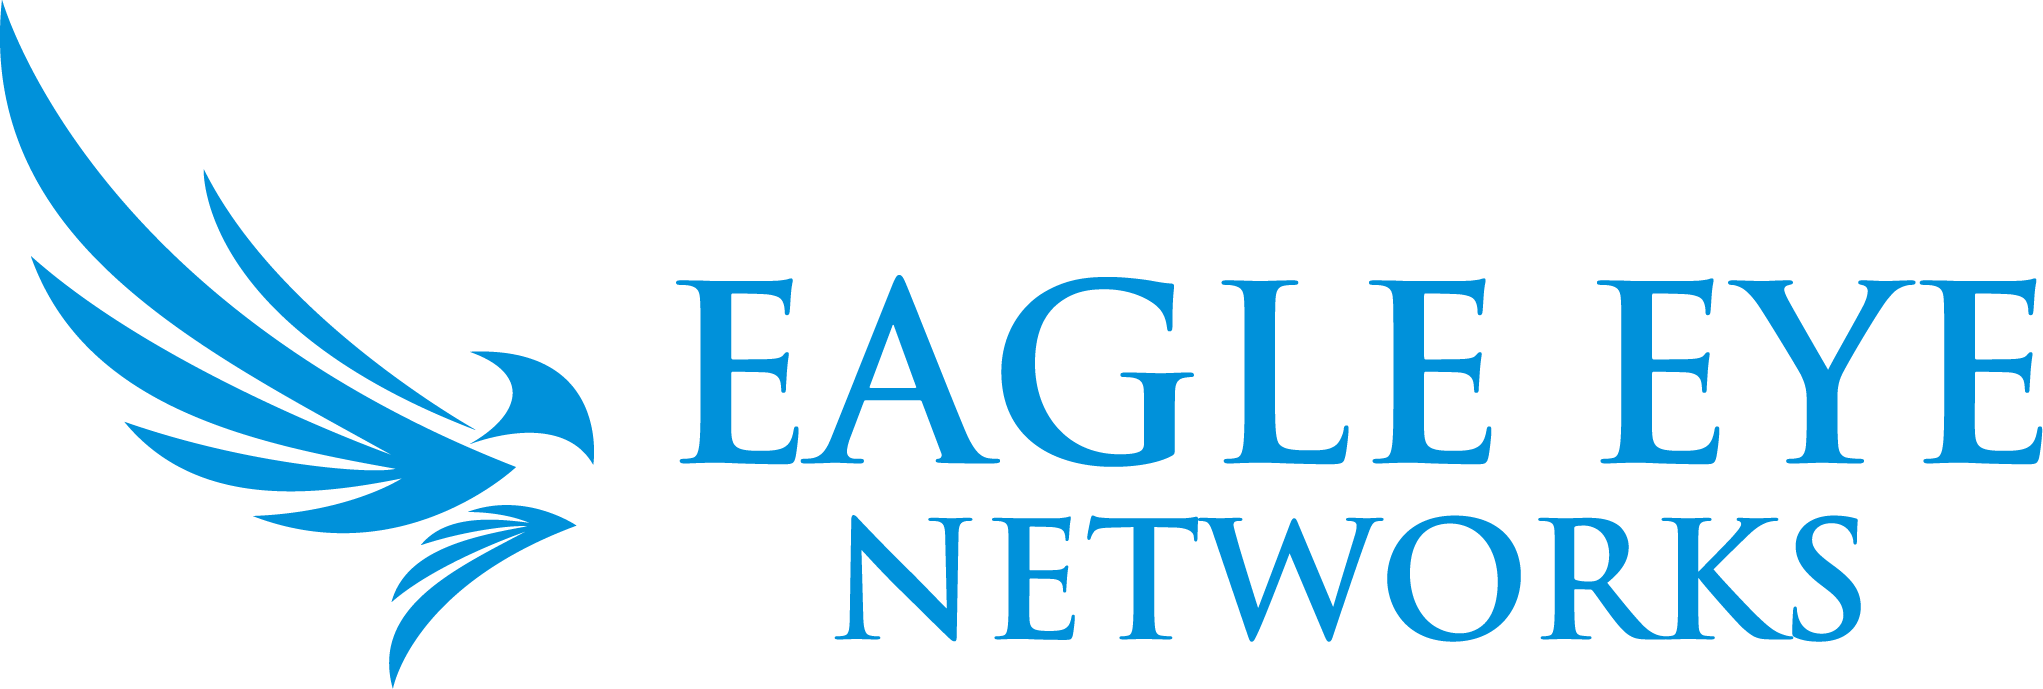 Eagle Eye Networks Company Logo